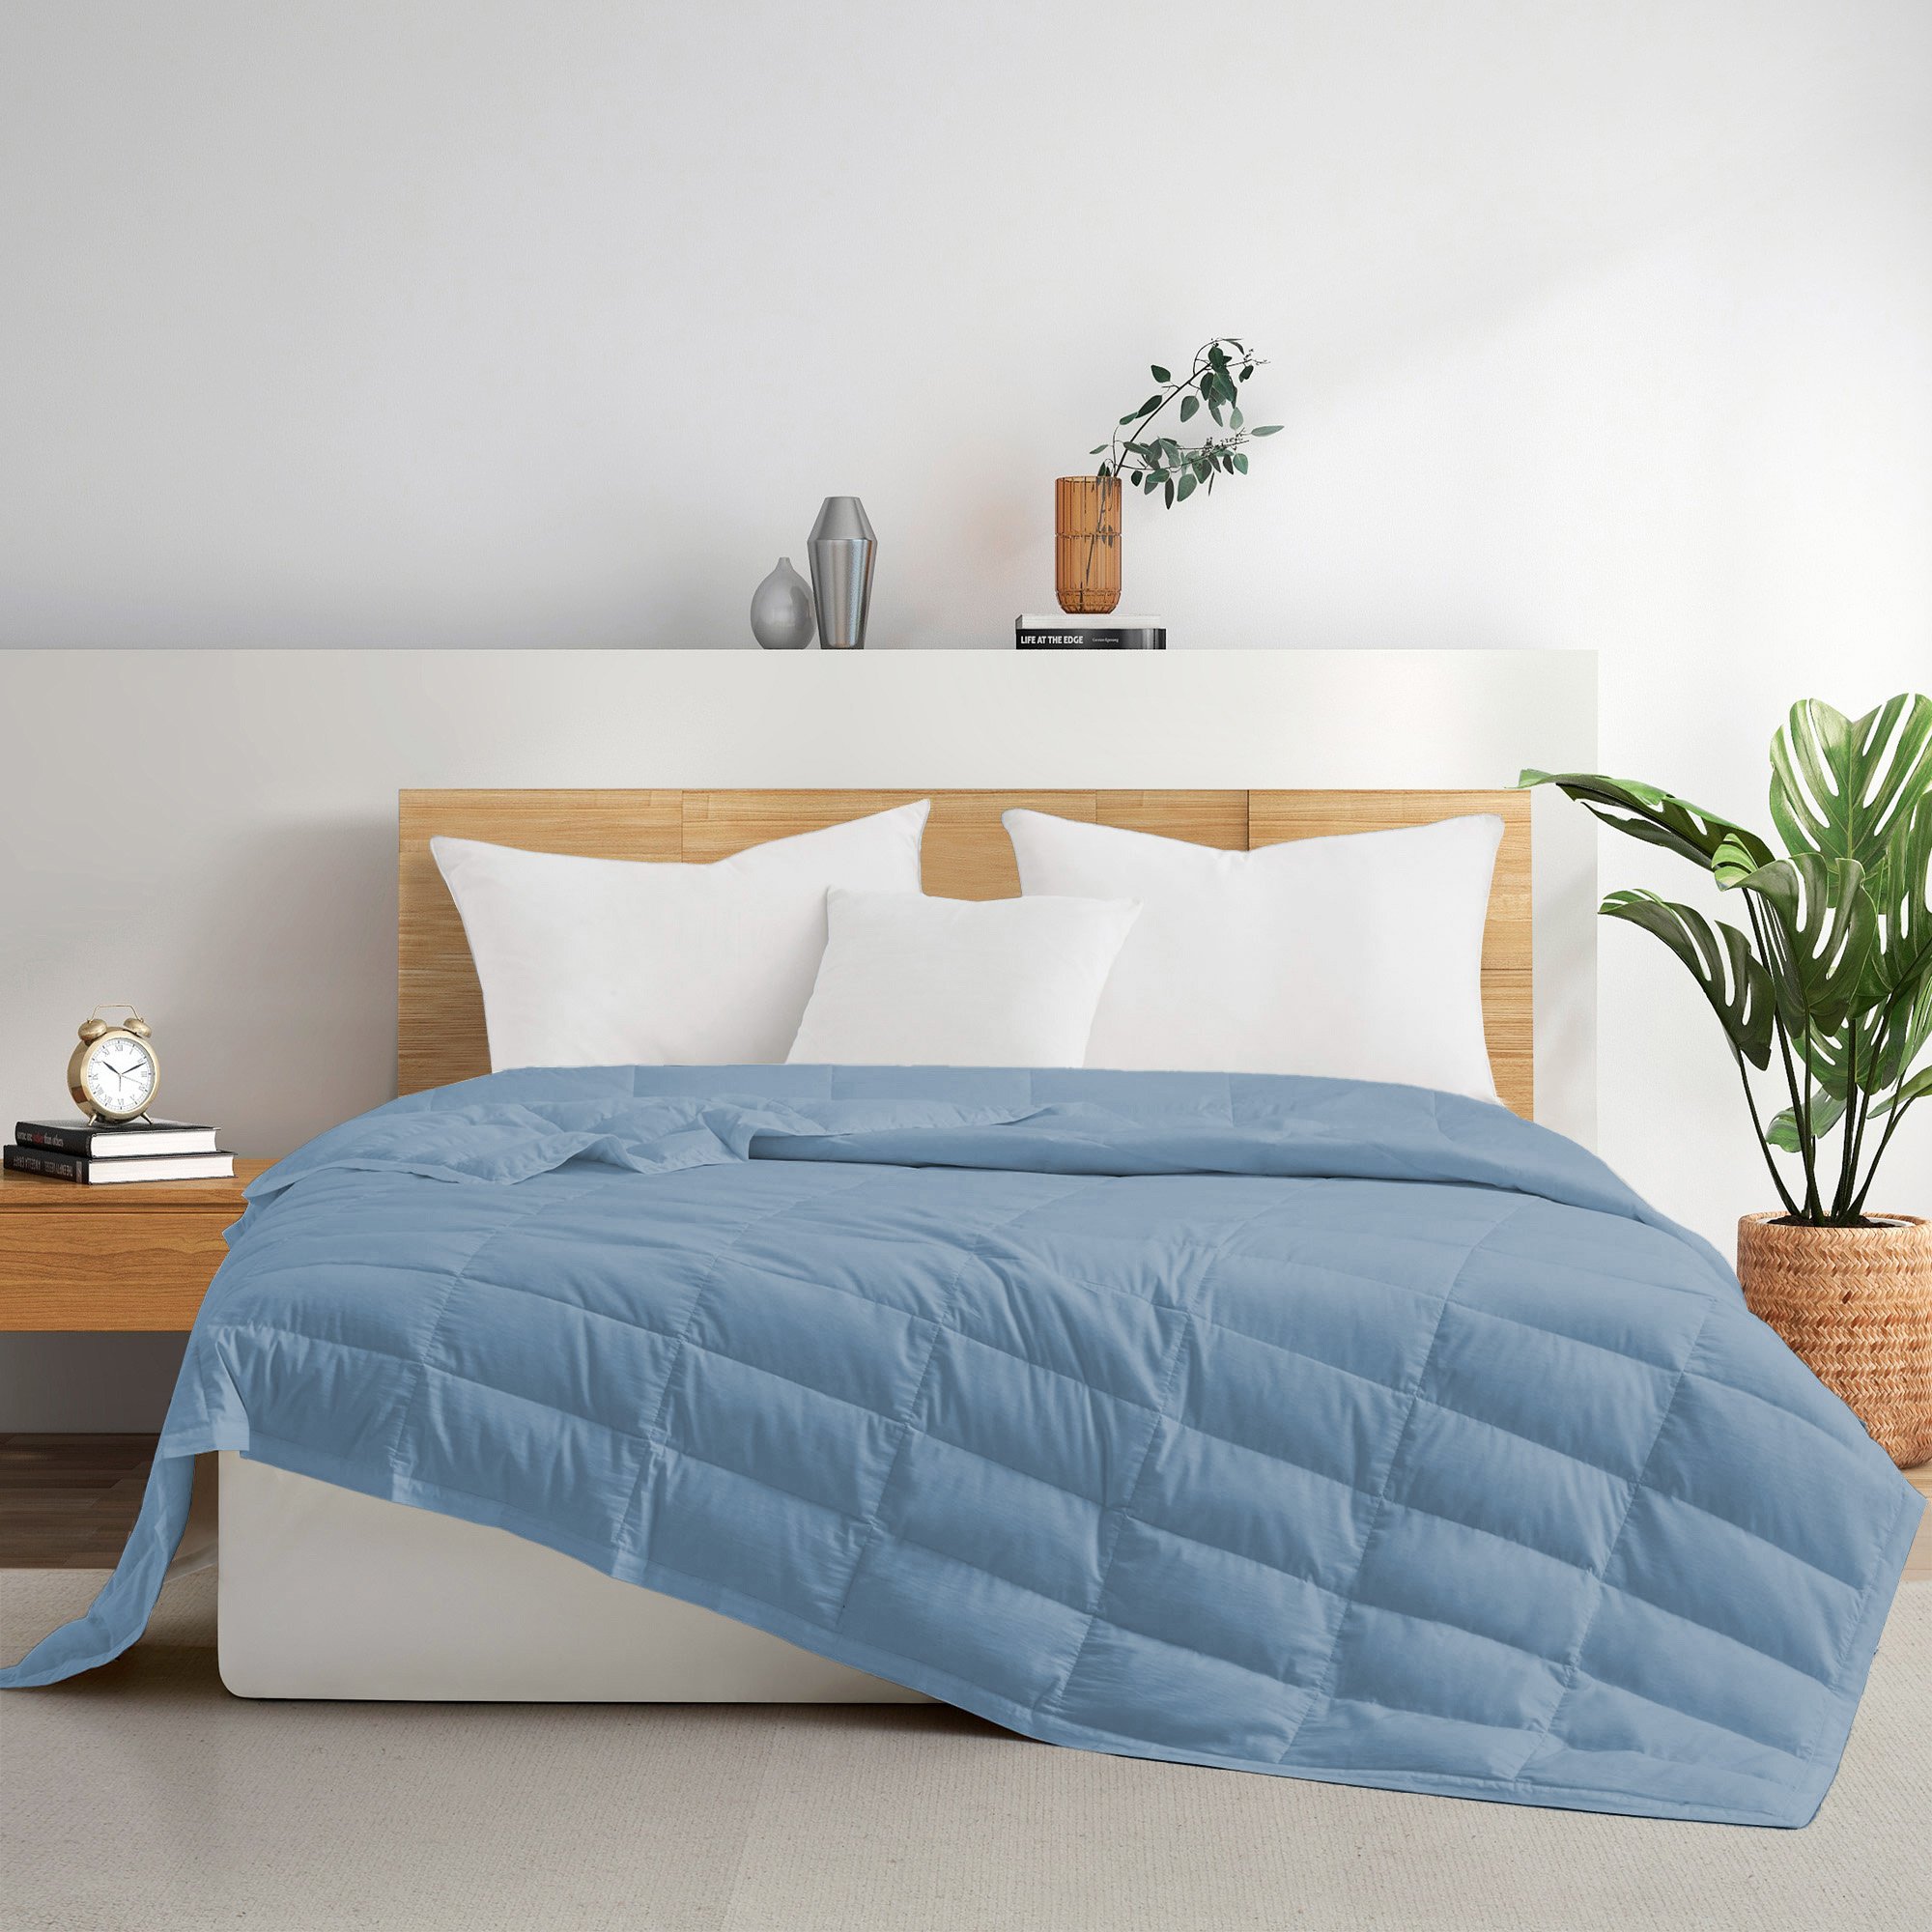 TENCELâ¢ Lyocell Lightweight Cooling Down Blanket-Luxurious Comfort Summer Blanket - Dusty Aqua, Full/Queen